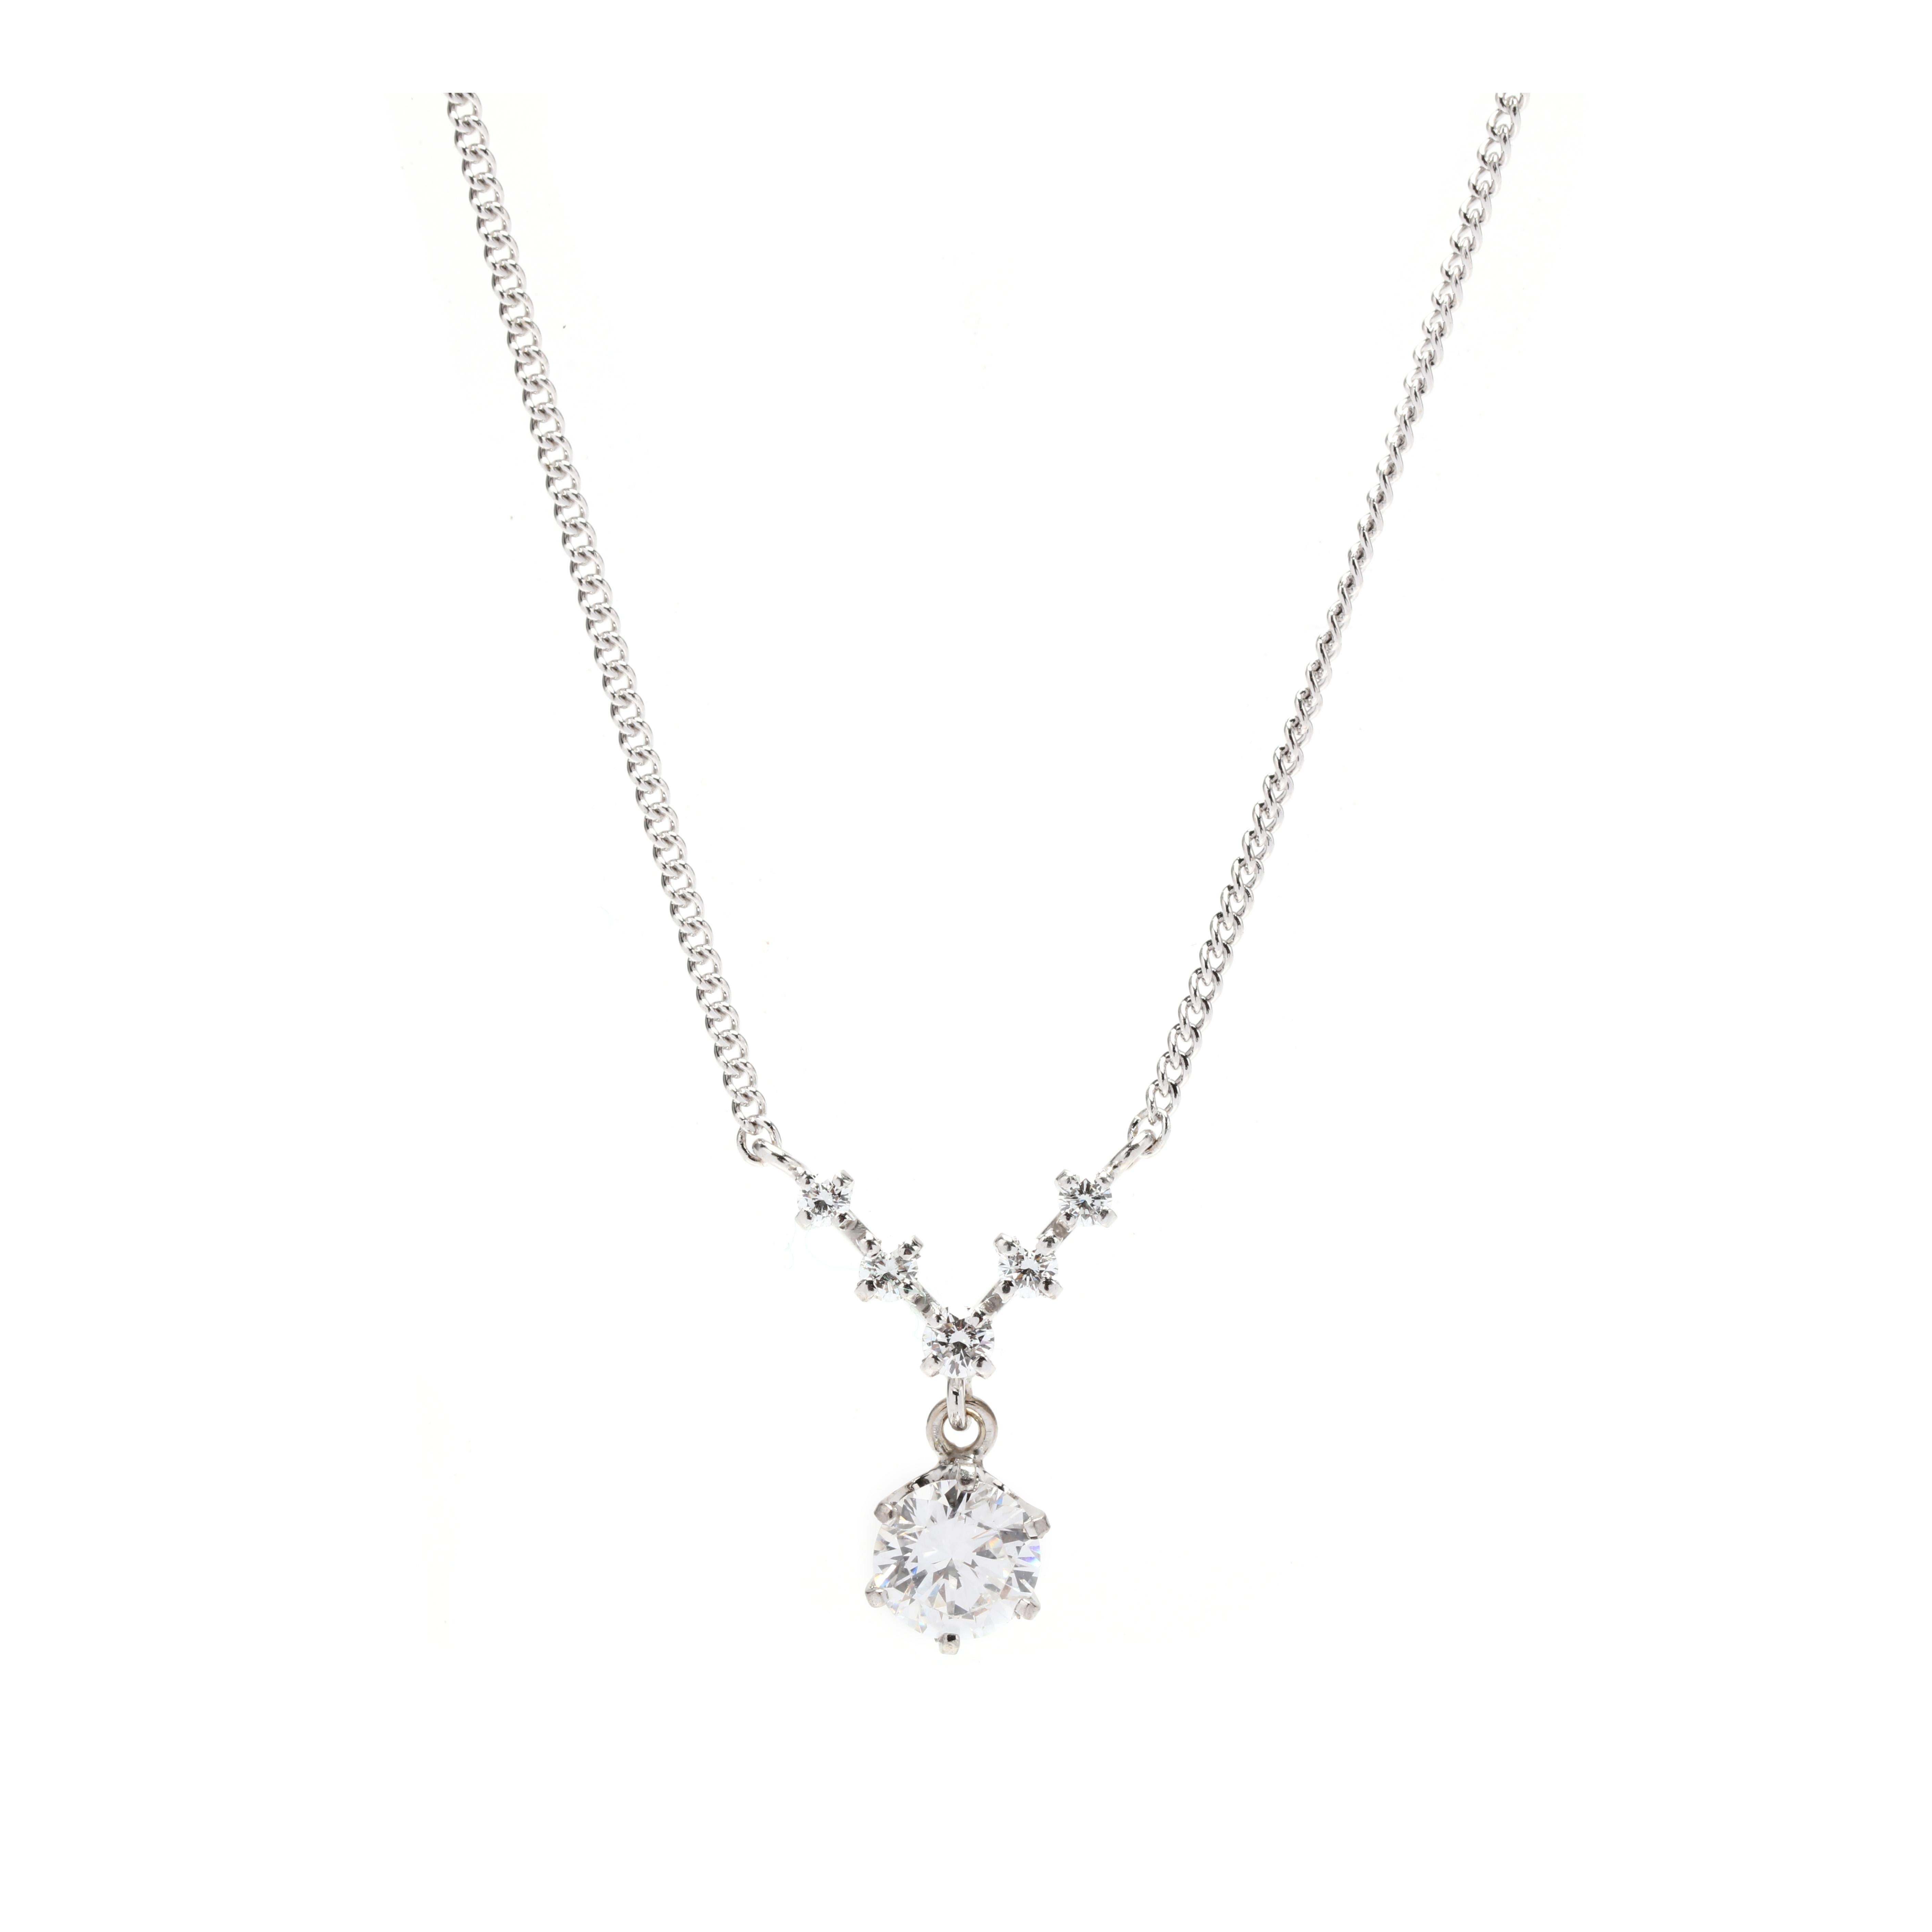 Ce collier pendentif en V avec un diamant de 0,75ctw sera du plus bel effet. Fabriqué en or blanc 14 carats, le collier est orné de 0,75ctw de diamants étincelants. La longueur du collier est de 16,5 pouces, parfait pour un usage quotidien. Le